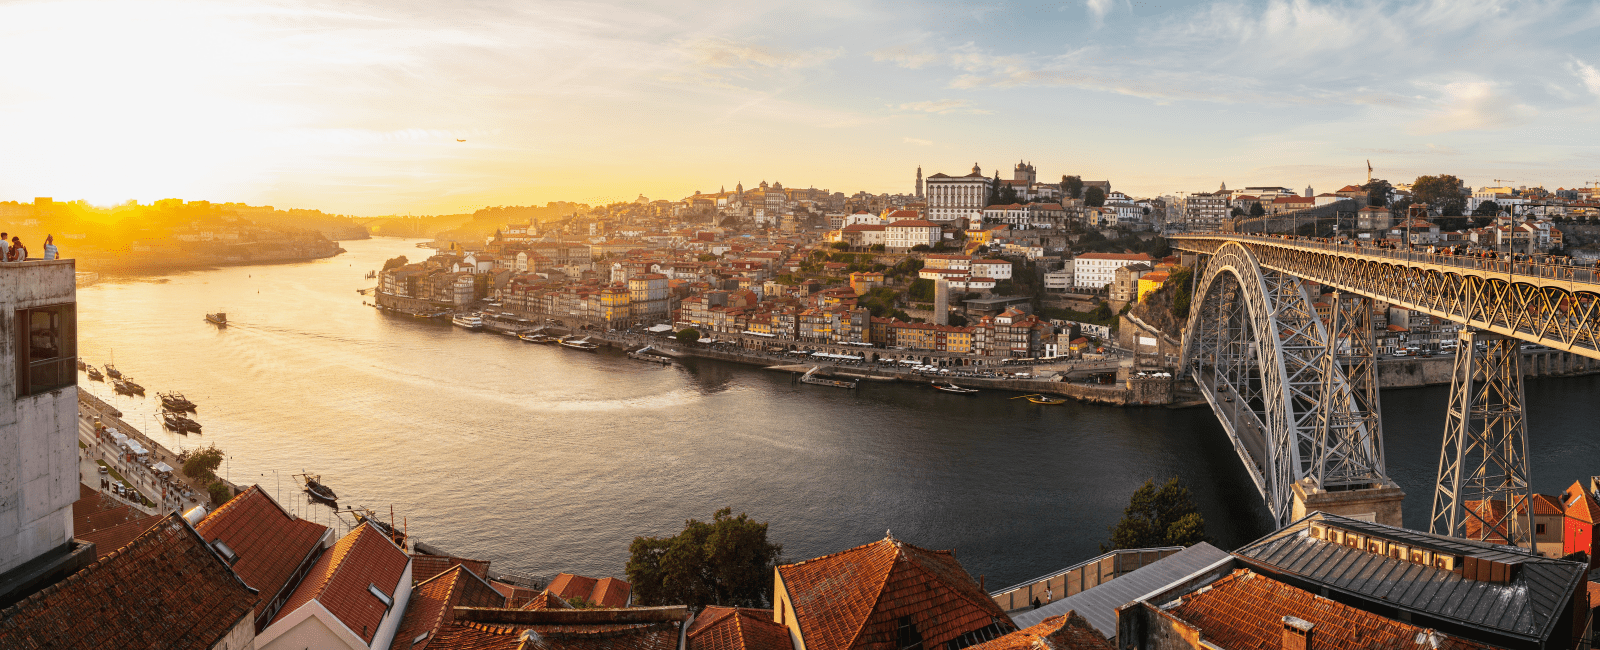 Porto, Duoro River by Daniel Sessler via unsplash